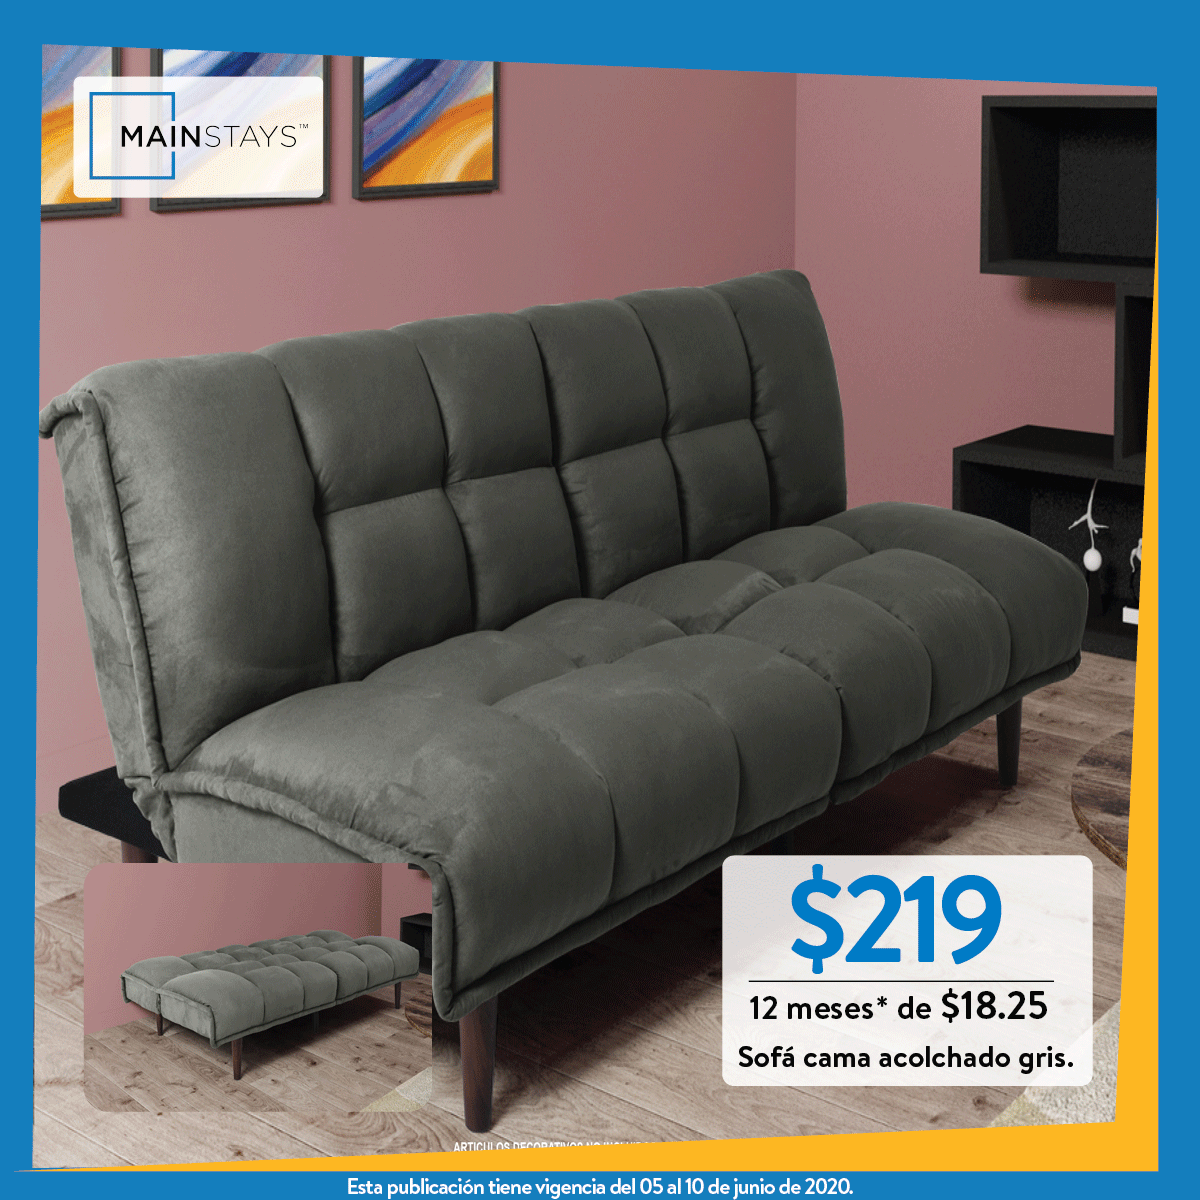 Walmart-ofertas-dia-del-padre-2020-sofa-cama - Ofertas Ahora